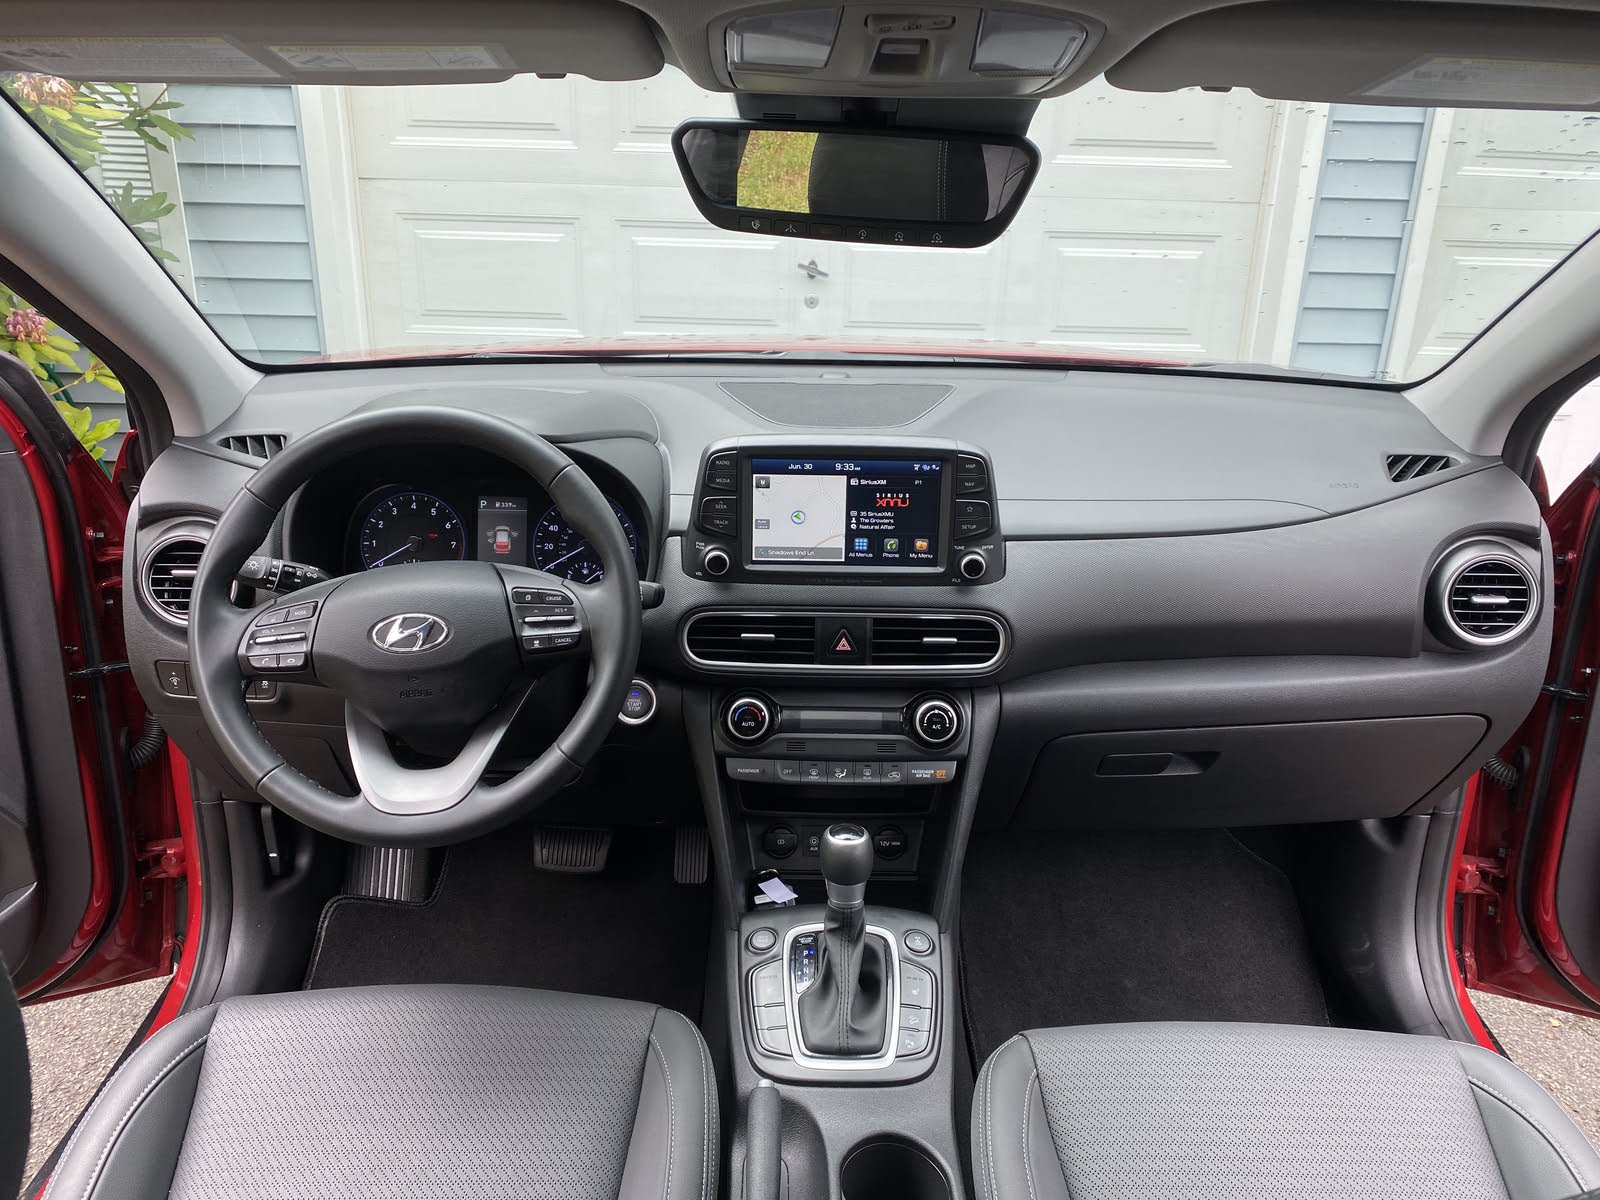 2020 Hyundai Kona Test Drive Review